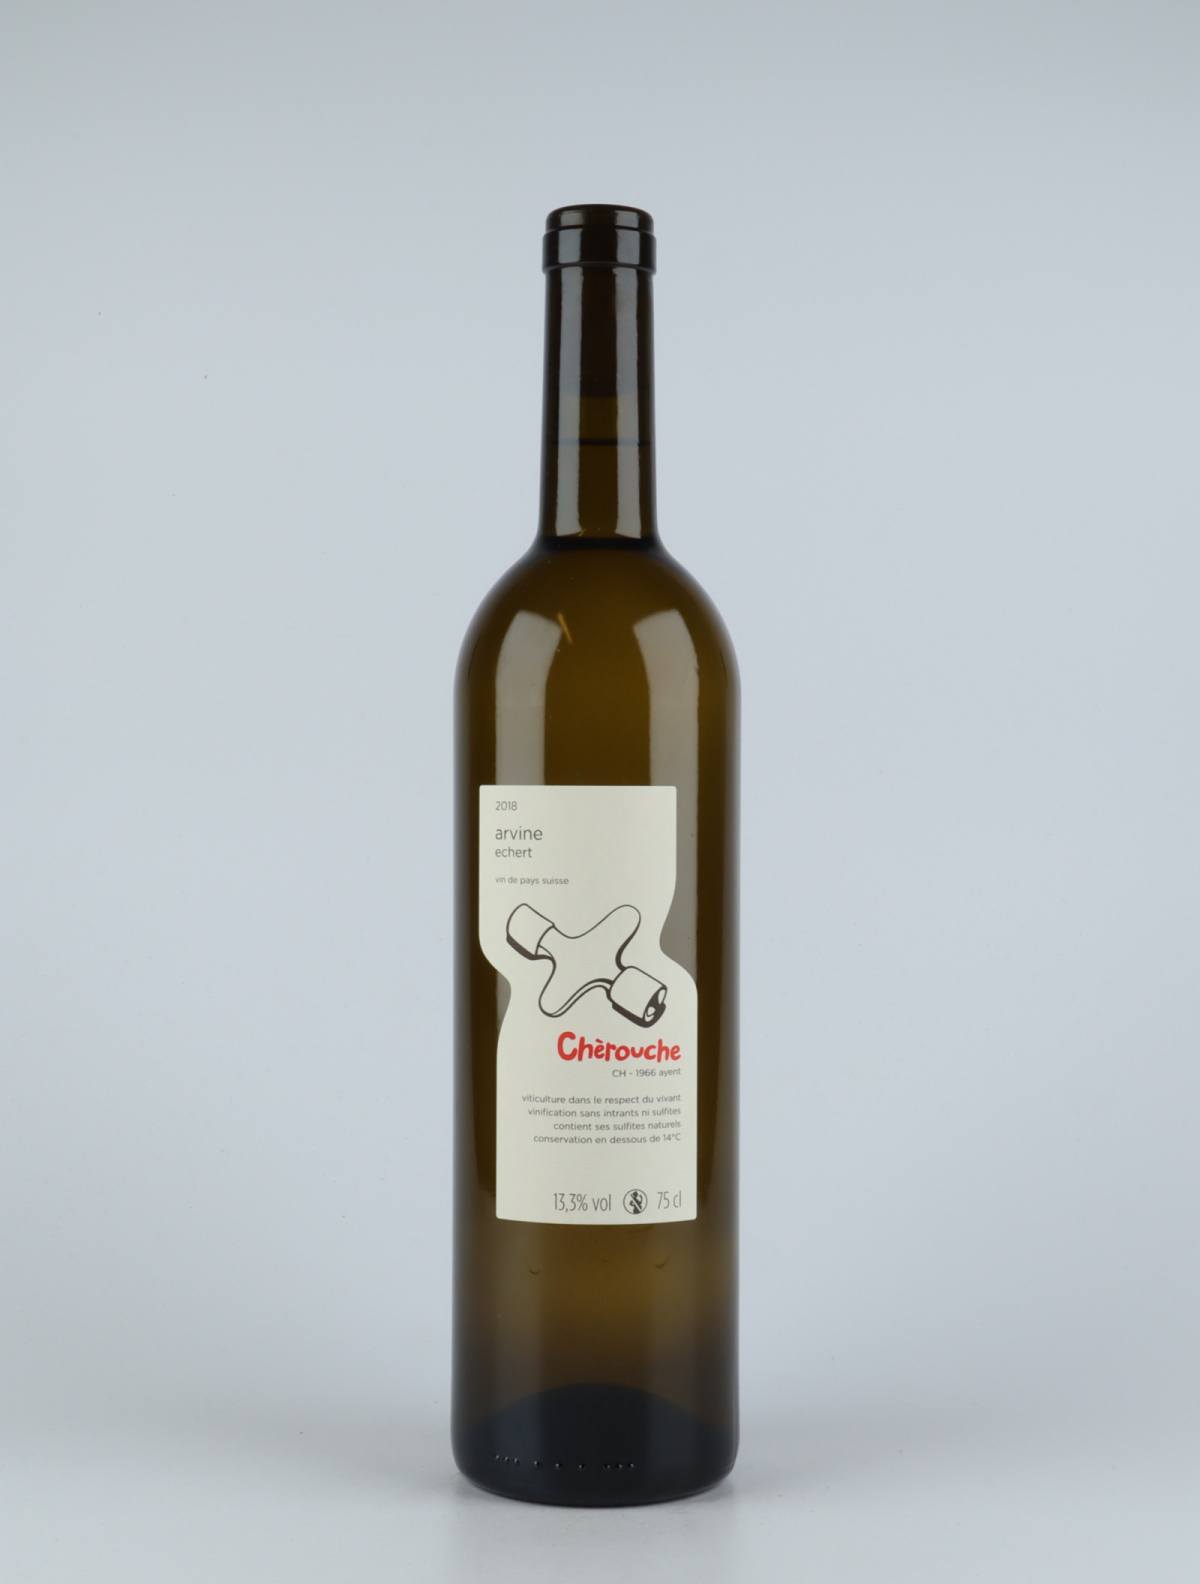 A bottle 2018 Arvine White wine from Chèrouche, Valais in Switzerland